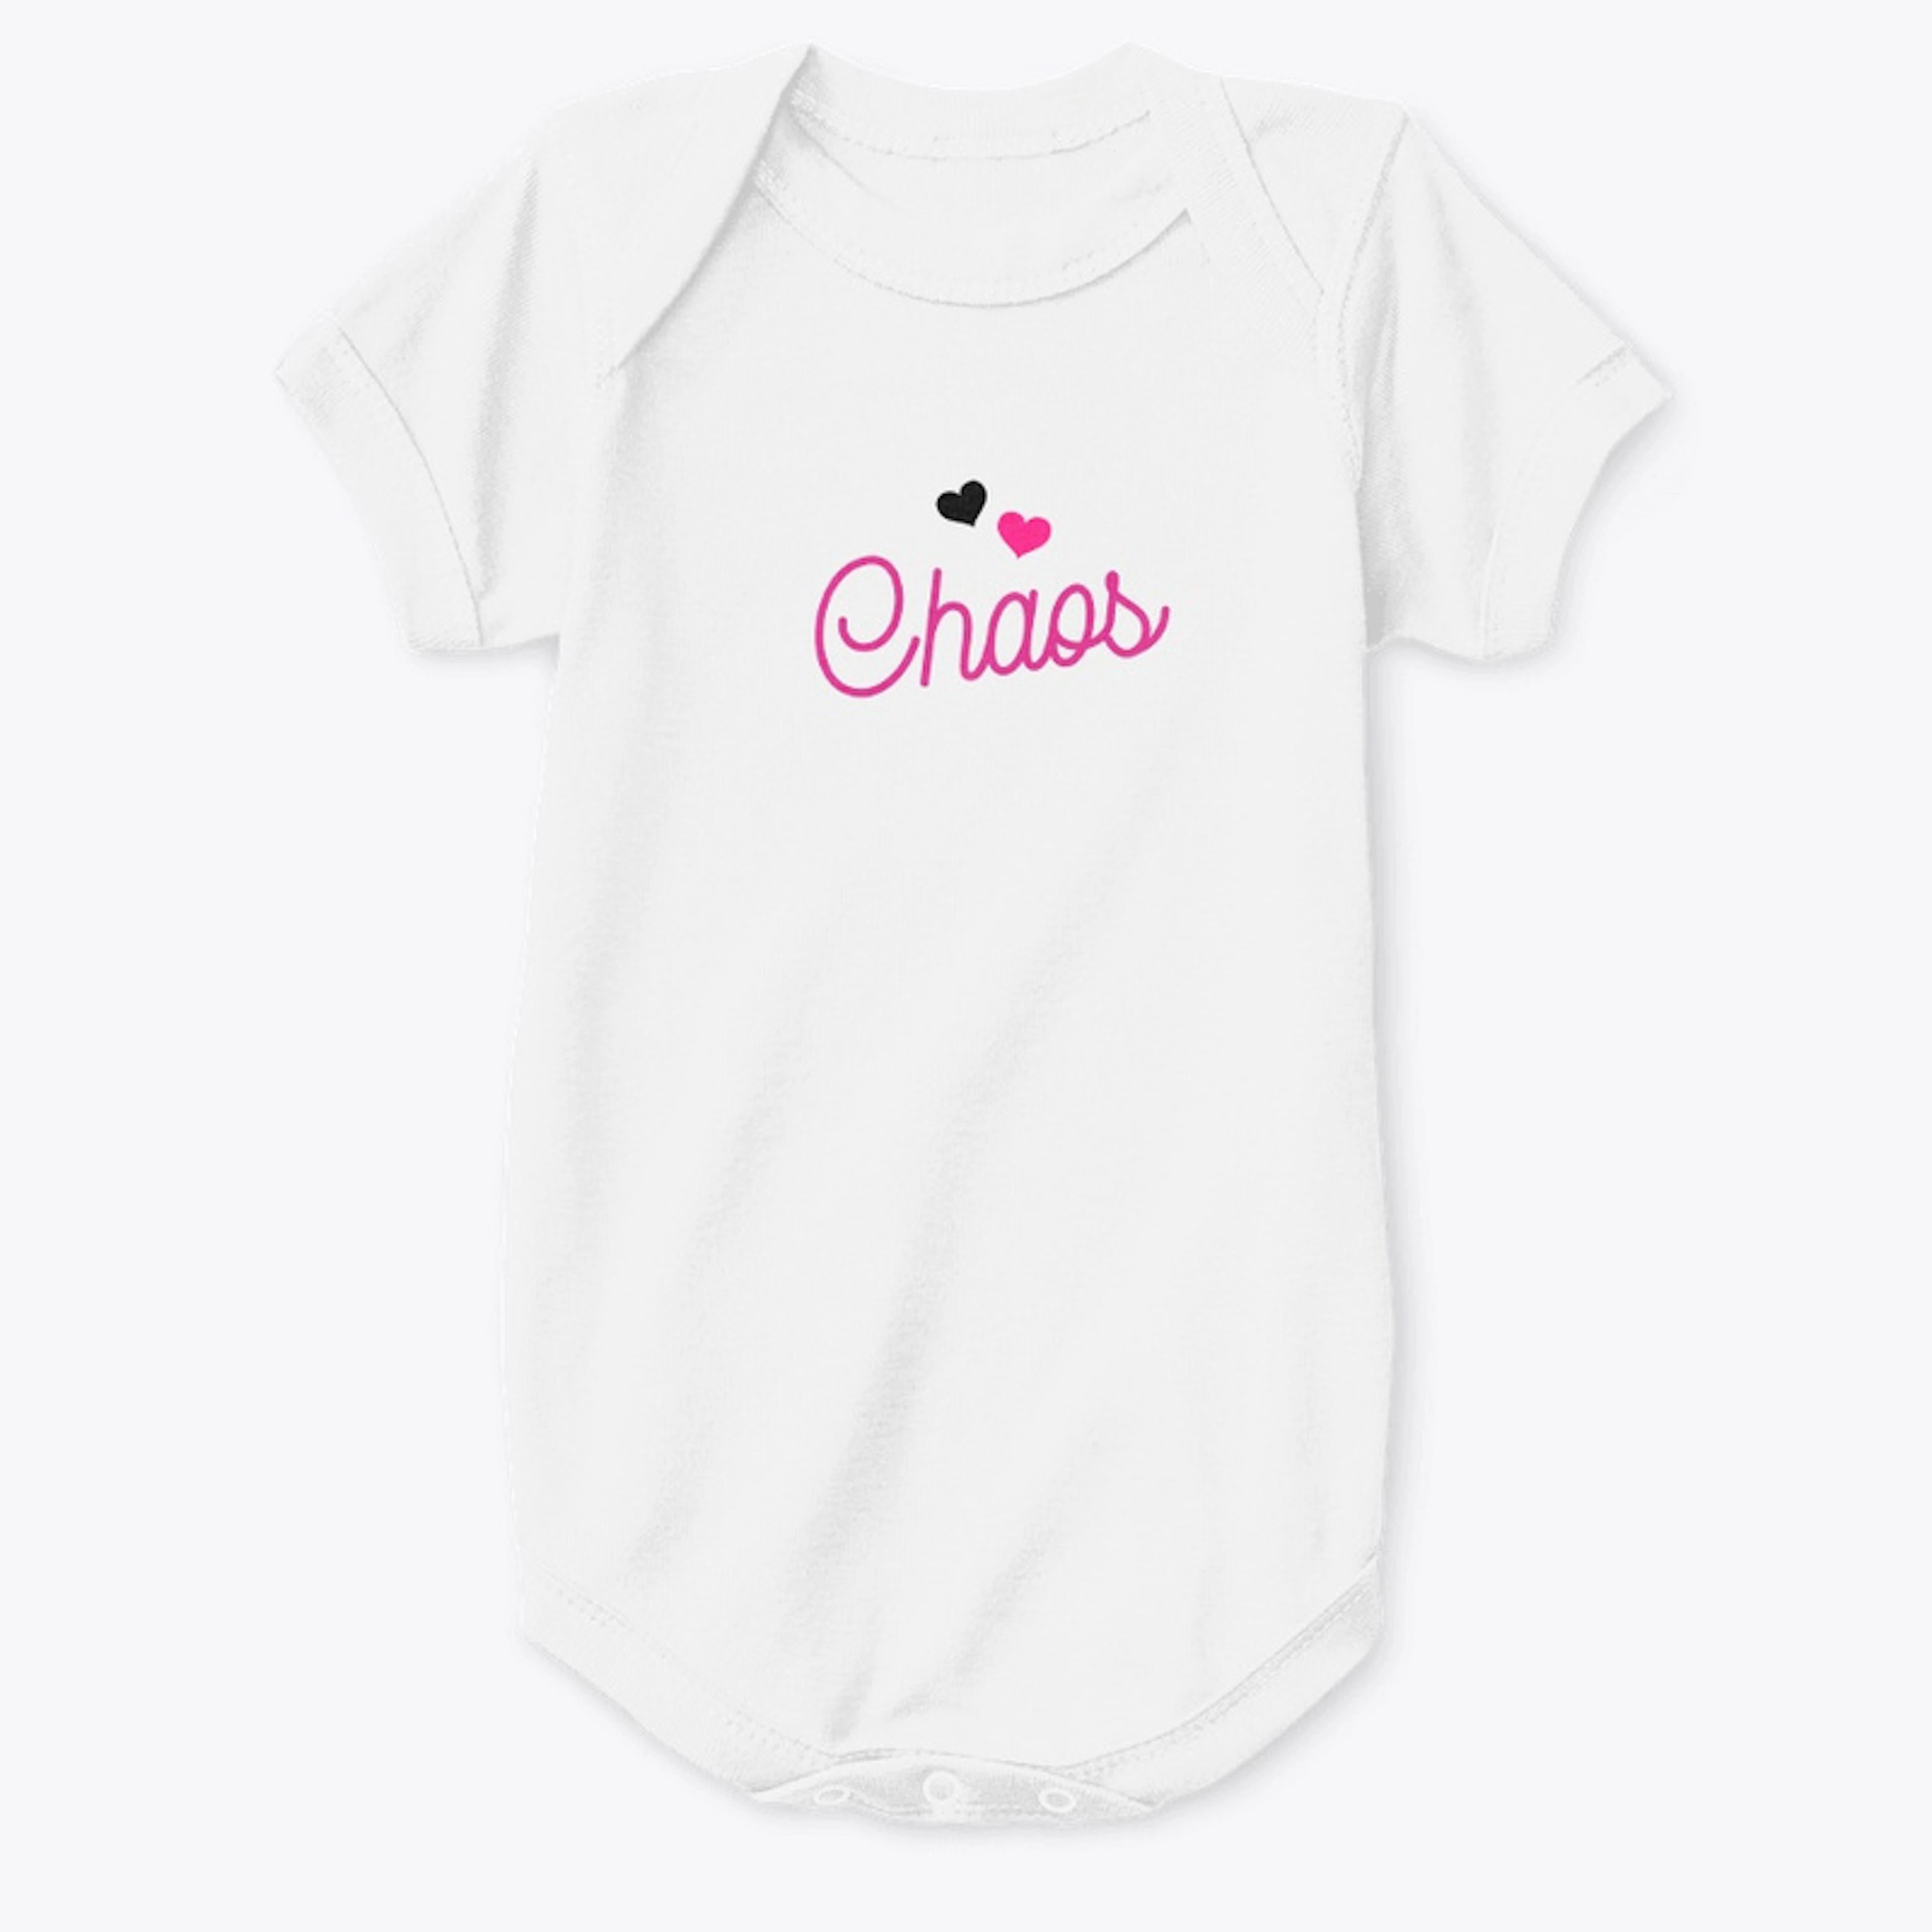 Chaos shirt for girl